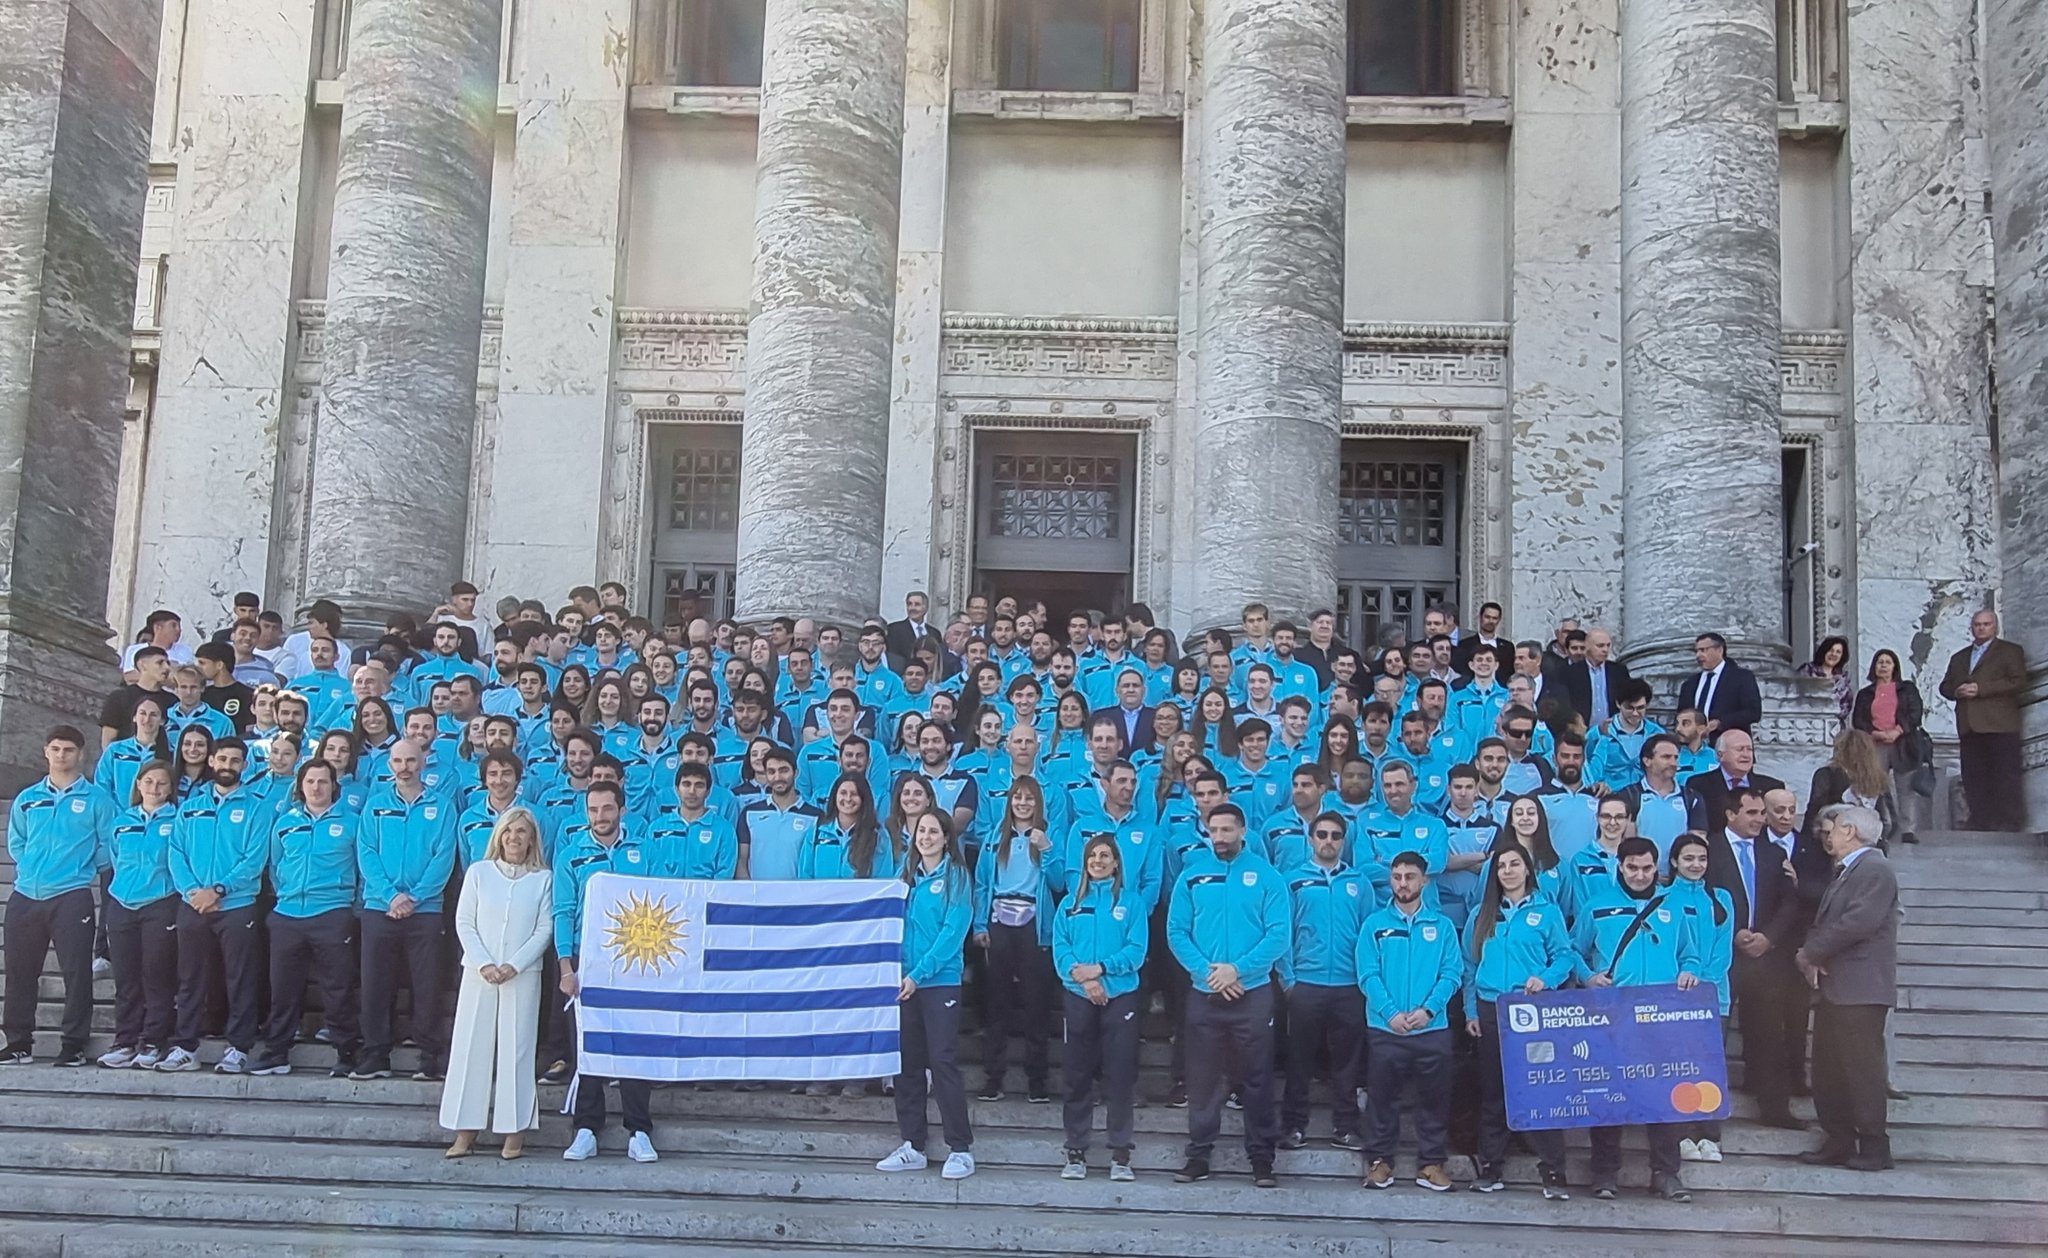 Juegos Odesur: Se realizó la despedida y entrega del pabellón a la delegación uruguaya